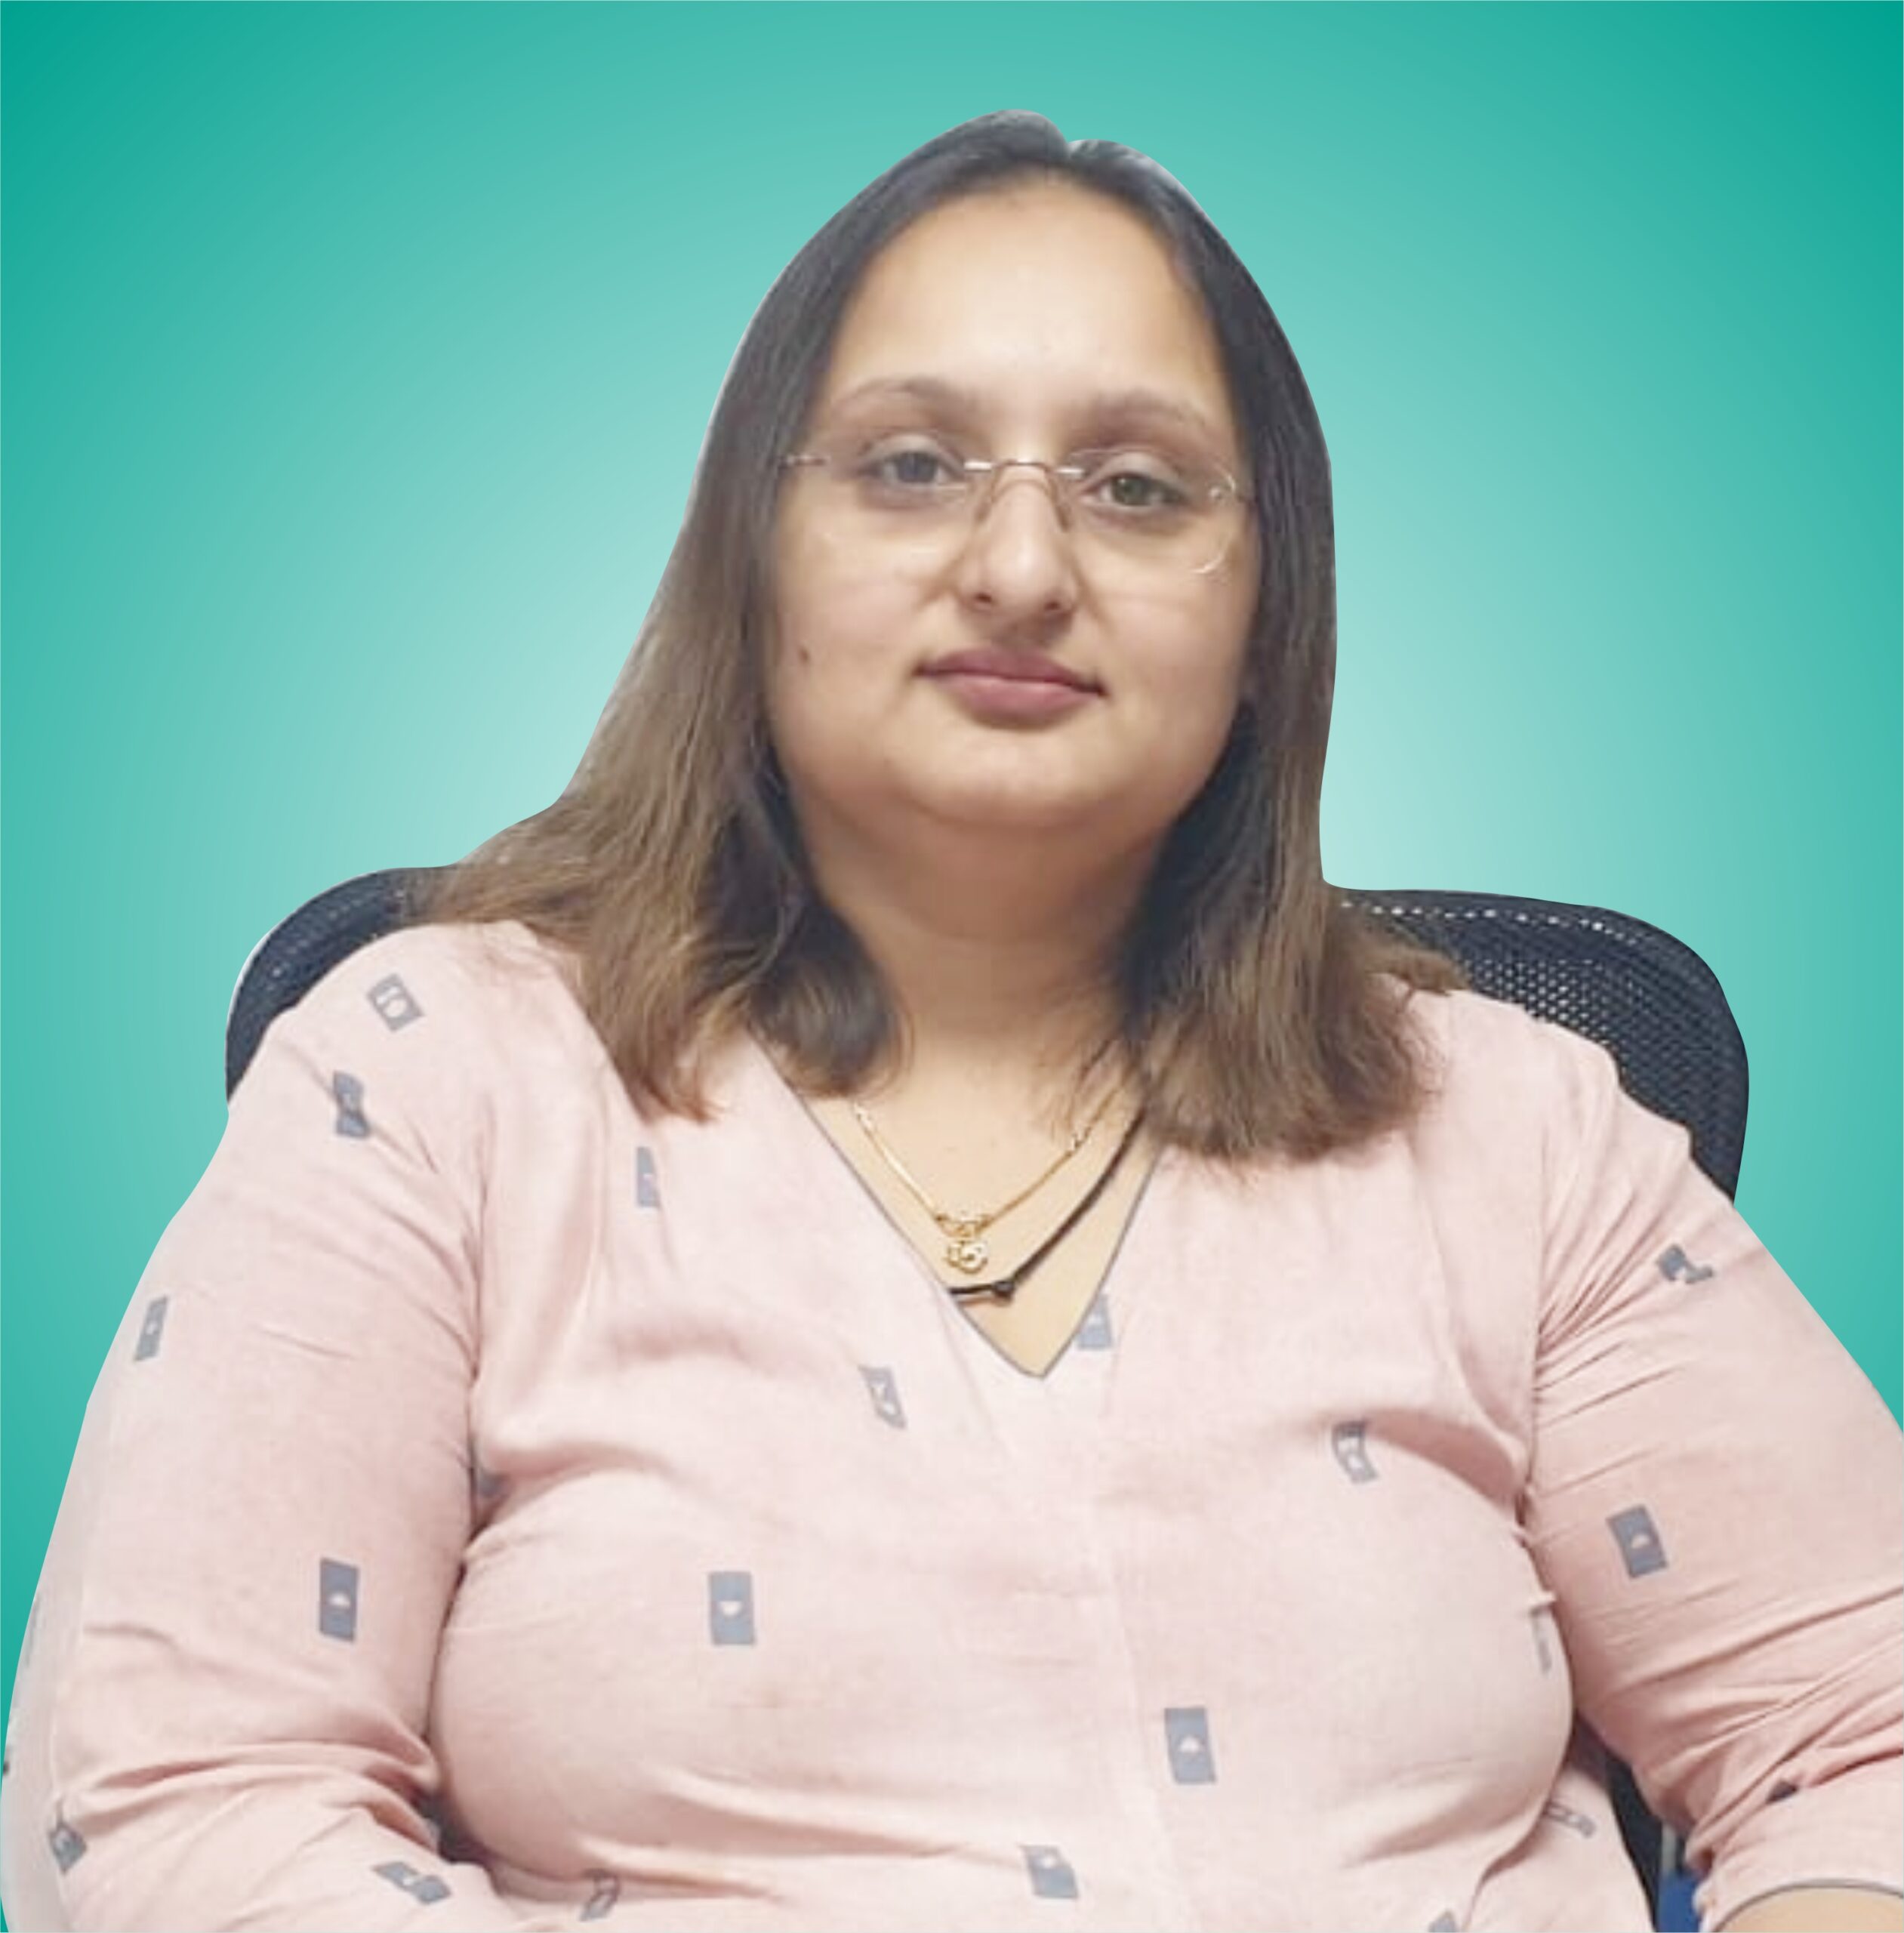  Dr. Priyanka Patel